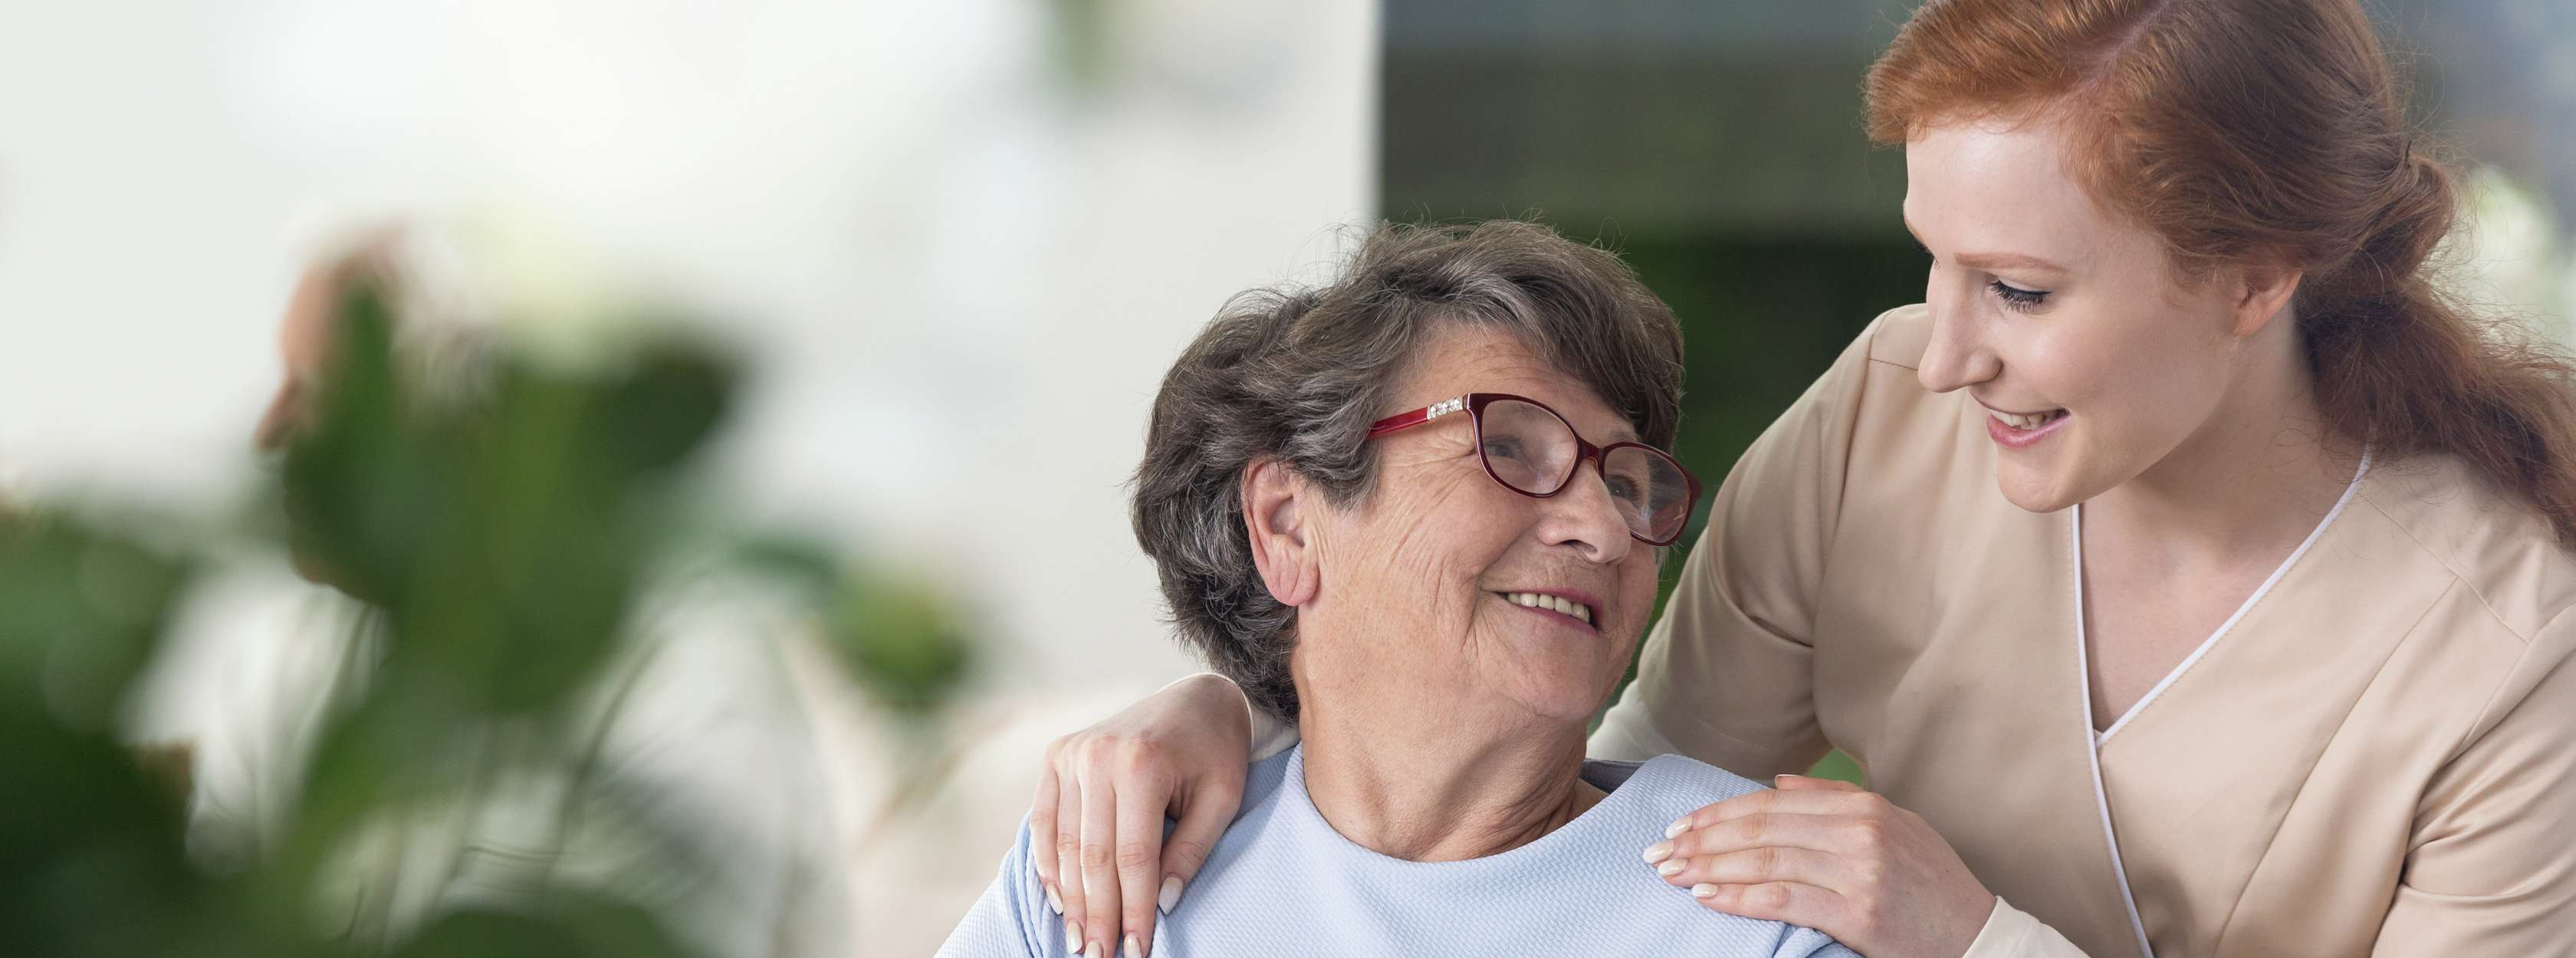 Rothaarige Pflegerin legt lächelnd die Hände auf den Schultern einer älteren Dame